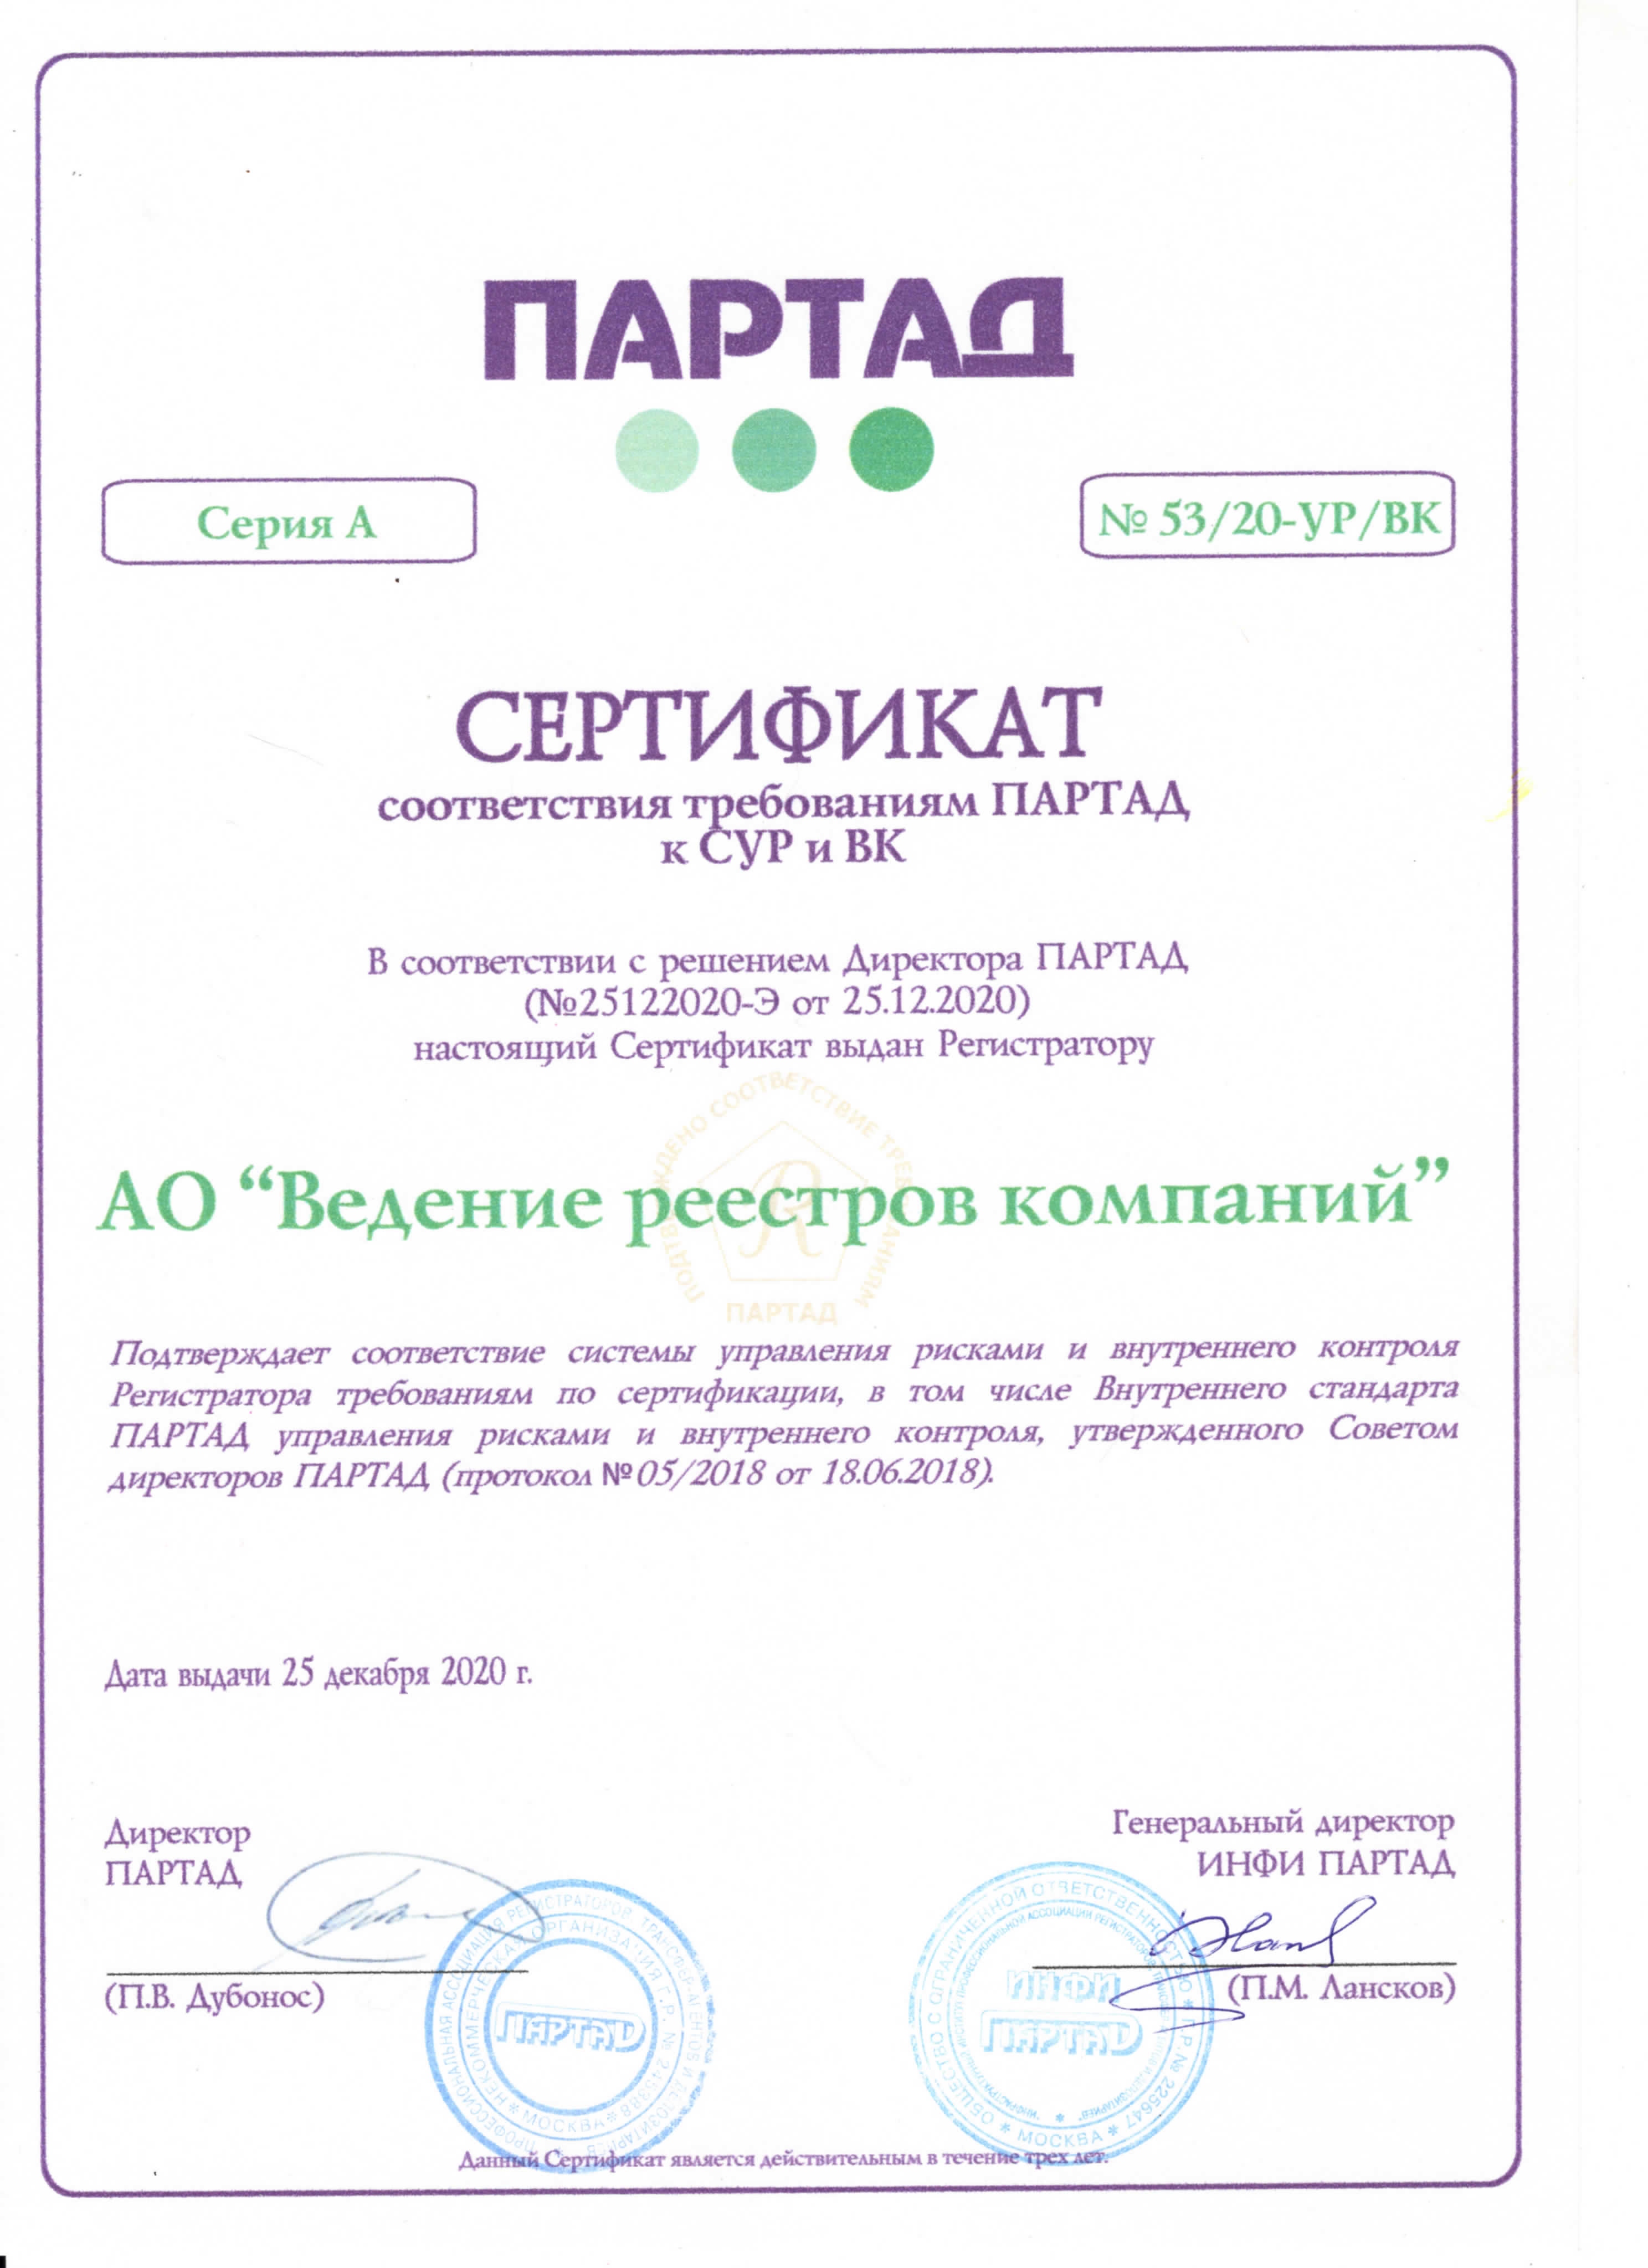 Сертификат ПАРТАД соответствия требованиям к CУР и ВК